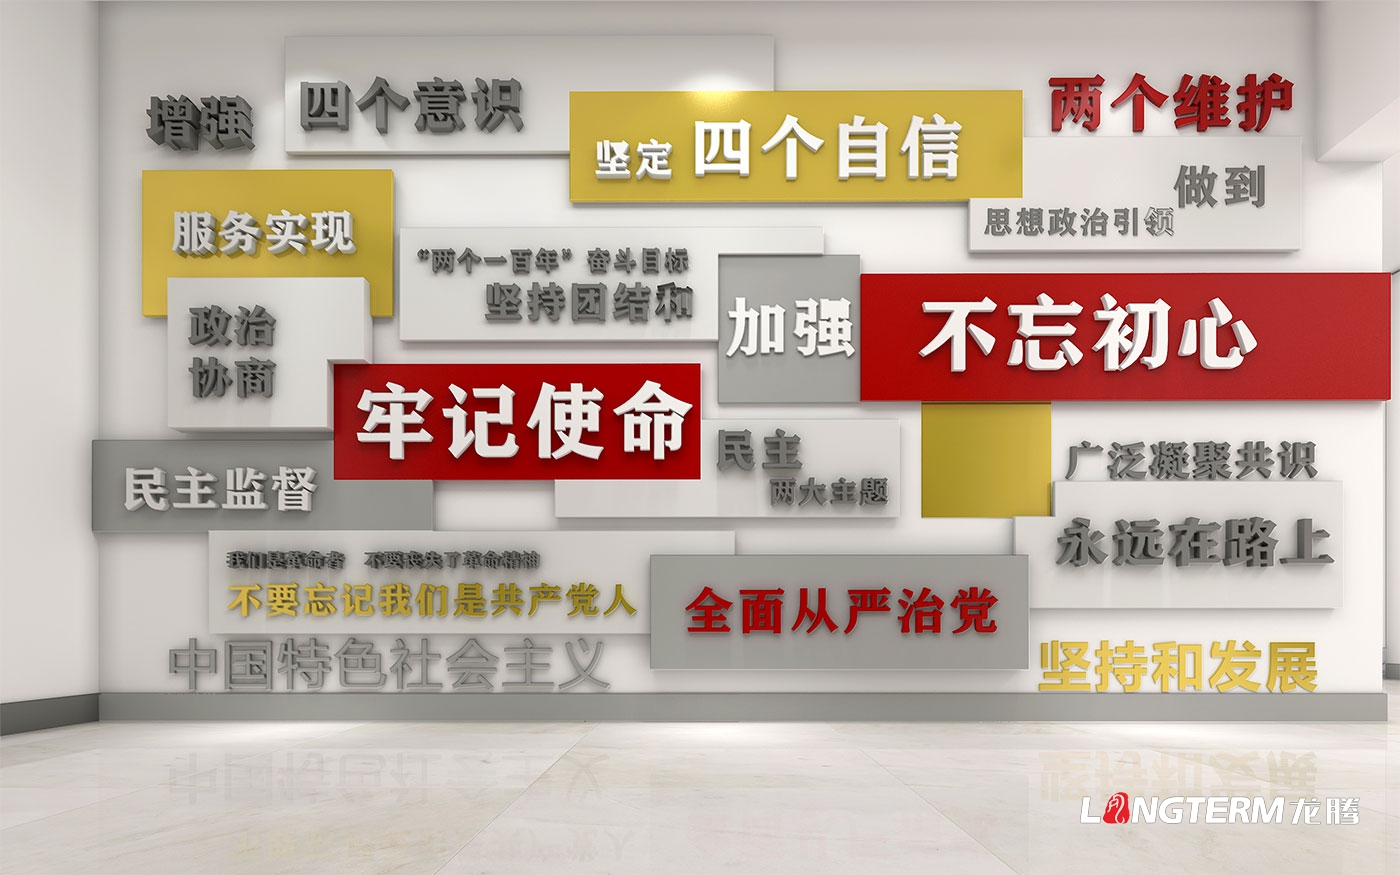 龙泉政协党建树模点设计_龙泉驿区政协党建树模阵地建设计划